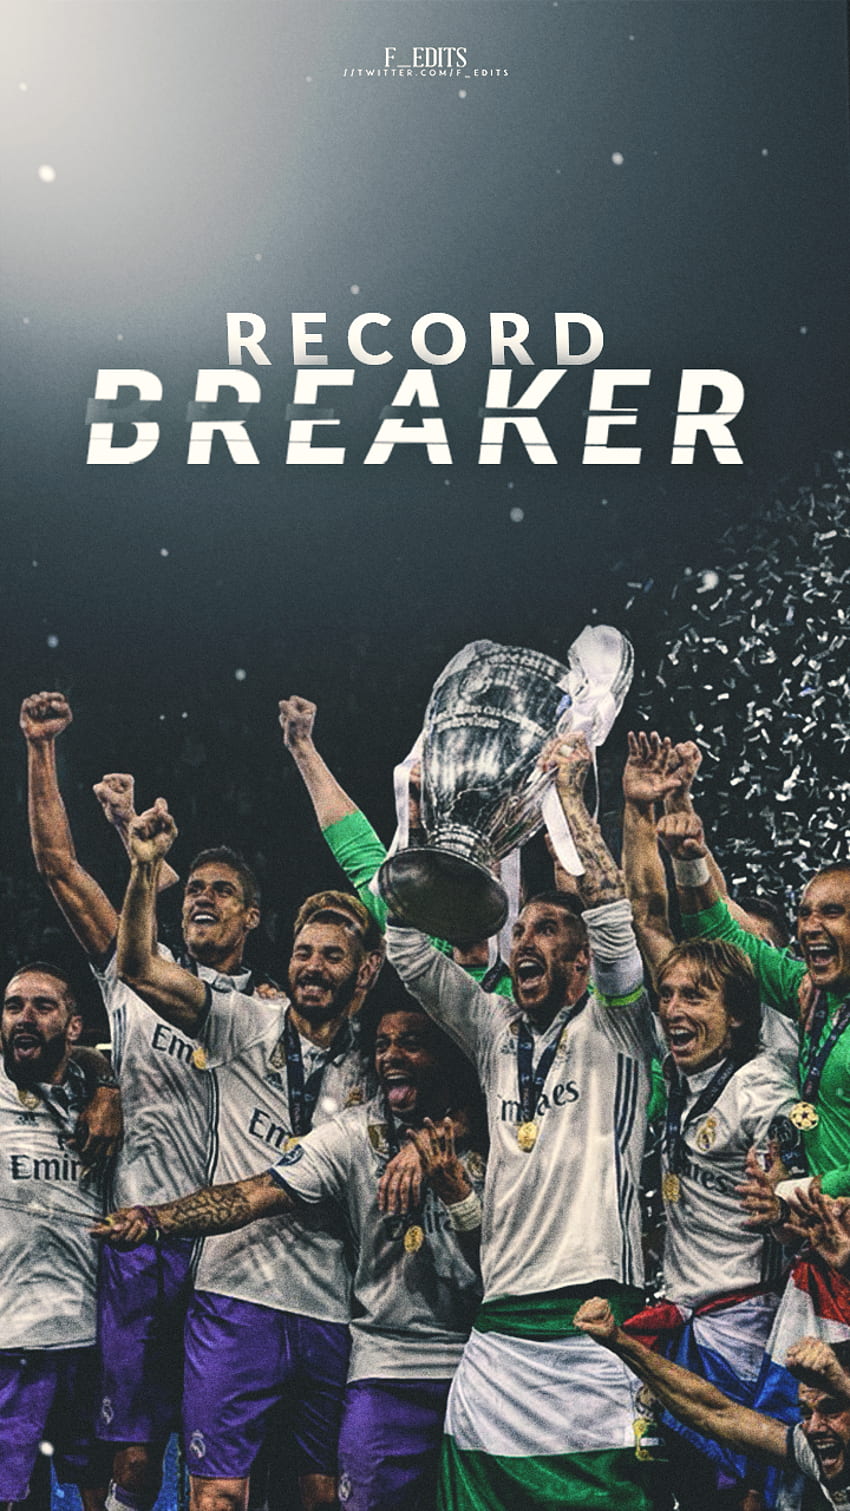 Real Madrid là đội bóng nổi tiếng nhất của thế giới, vô số danh hiệu và cầu thủ tài năng là điều giúp đội bóng này trở thành một đội bóng huyền thoại. Hãy cảm nhận và đắm mình trong bộ sưu tập hình nền độc đáo của Real Madrid, như một đam mê không bao giờ tán tụng hết được.